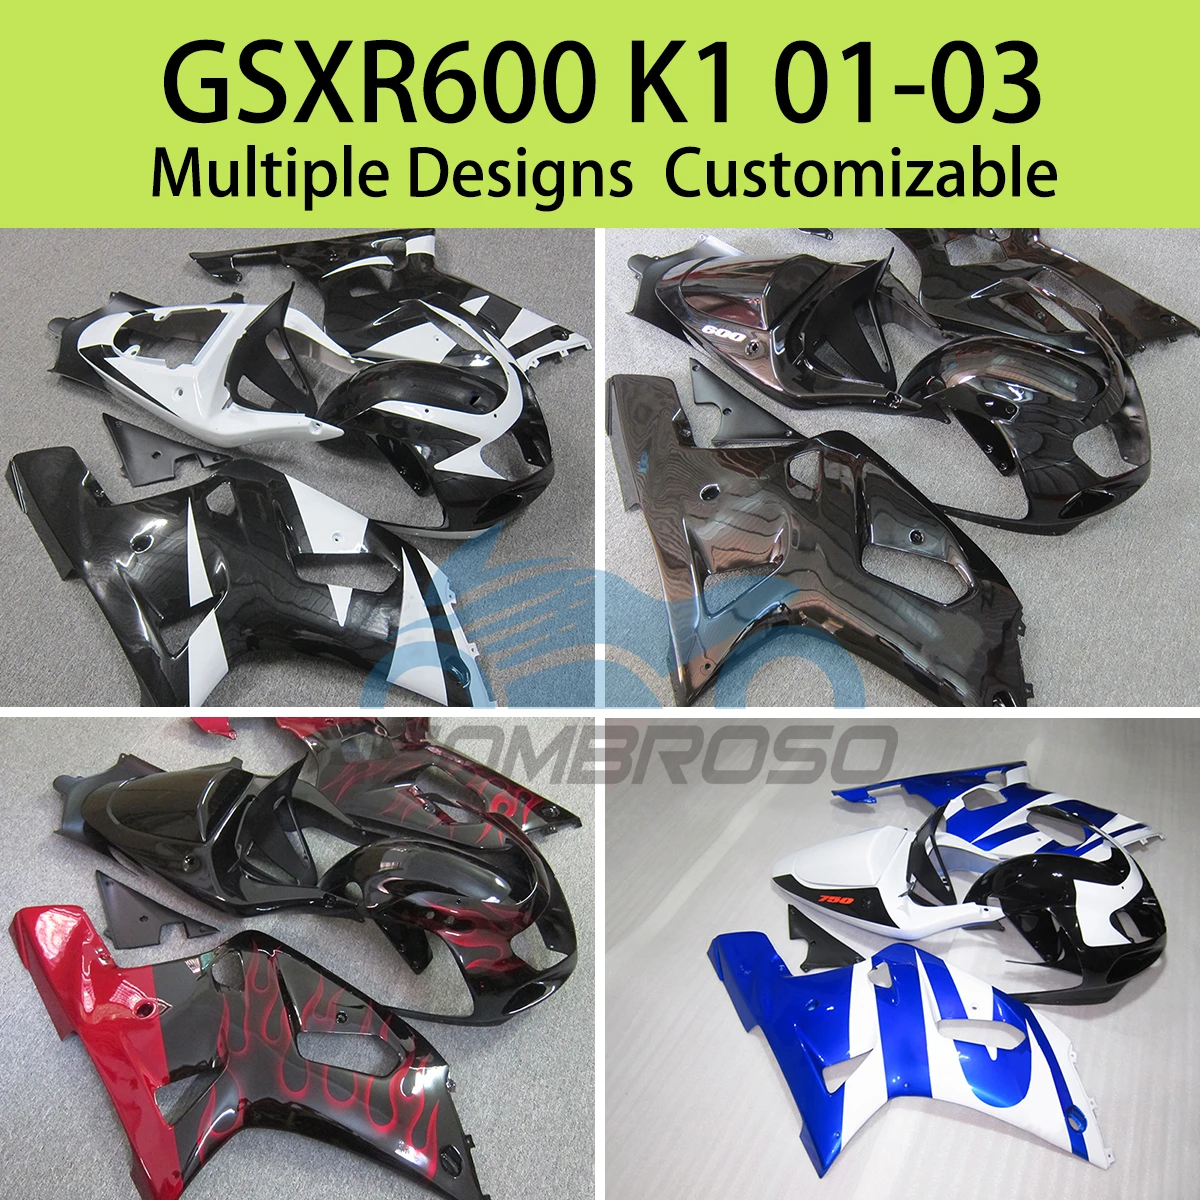 

For SUZUKI GSXR600 GSXR750 K1 2001 2002 2003 Motorcycle Fairings GSXR 600 750 01 02 03 ABS Injection Fairing Kit